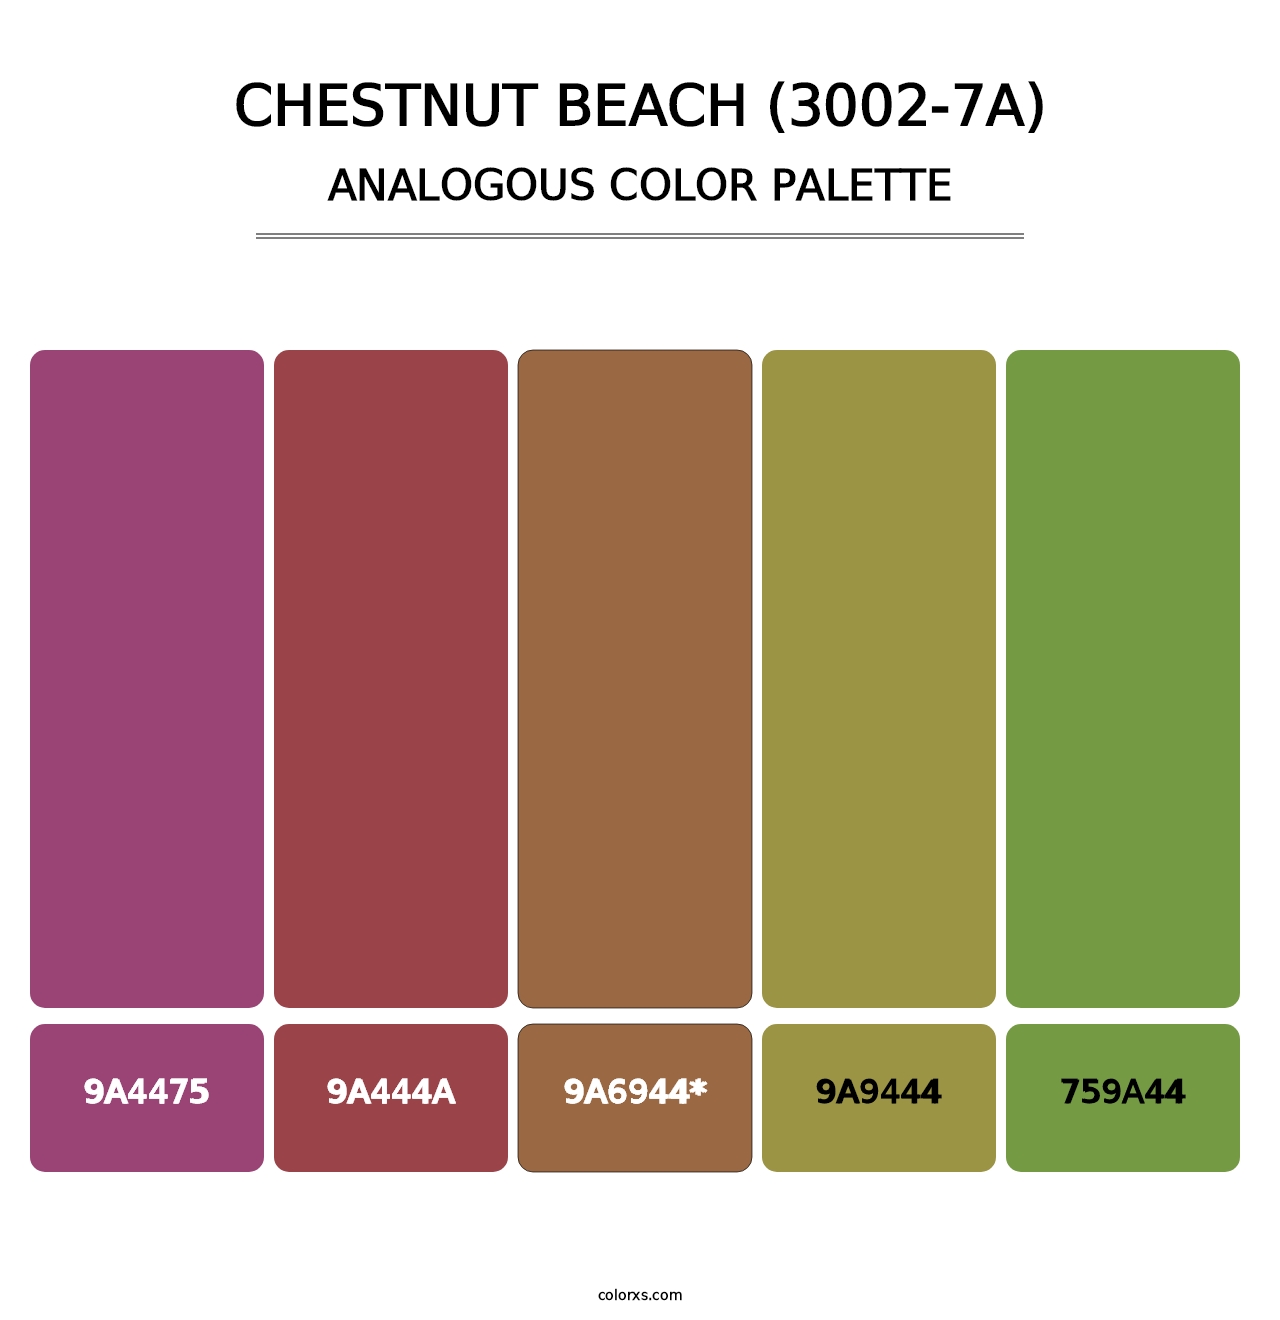 Chestnut Beach (3002-7A) - Analogous Color Palette